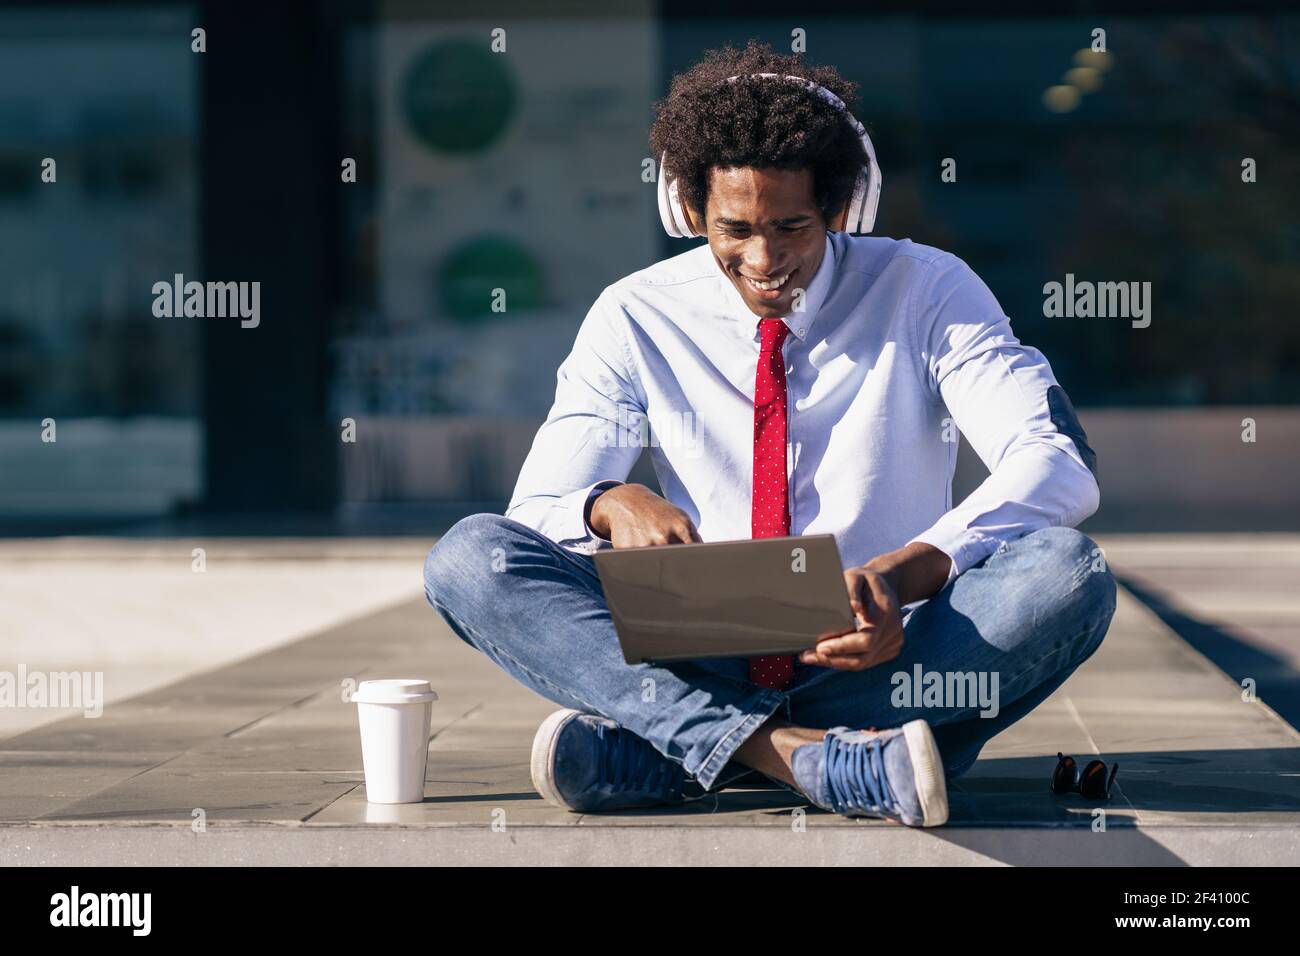 Homme d'affaires noir ayant une vidéoconférence avec ordinateur portable et casque Homme avec cheveux afro.. Homme d'affaires noir utilisant un ordinateur portable et un casque Banque D'Images